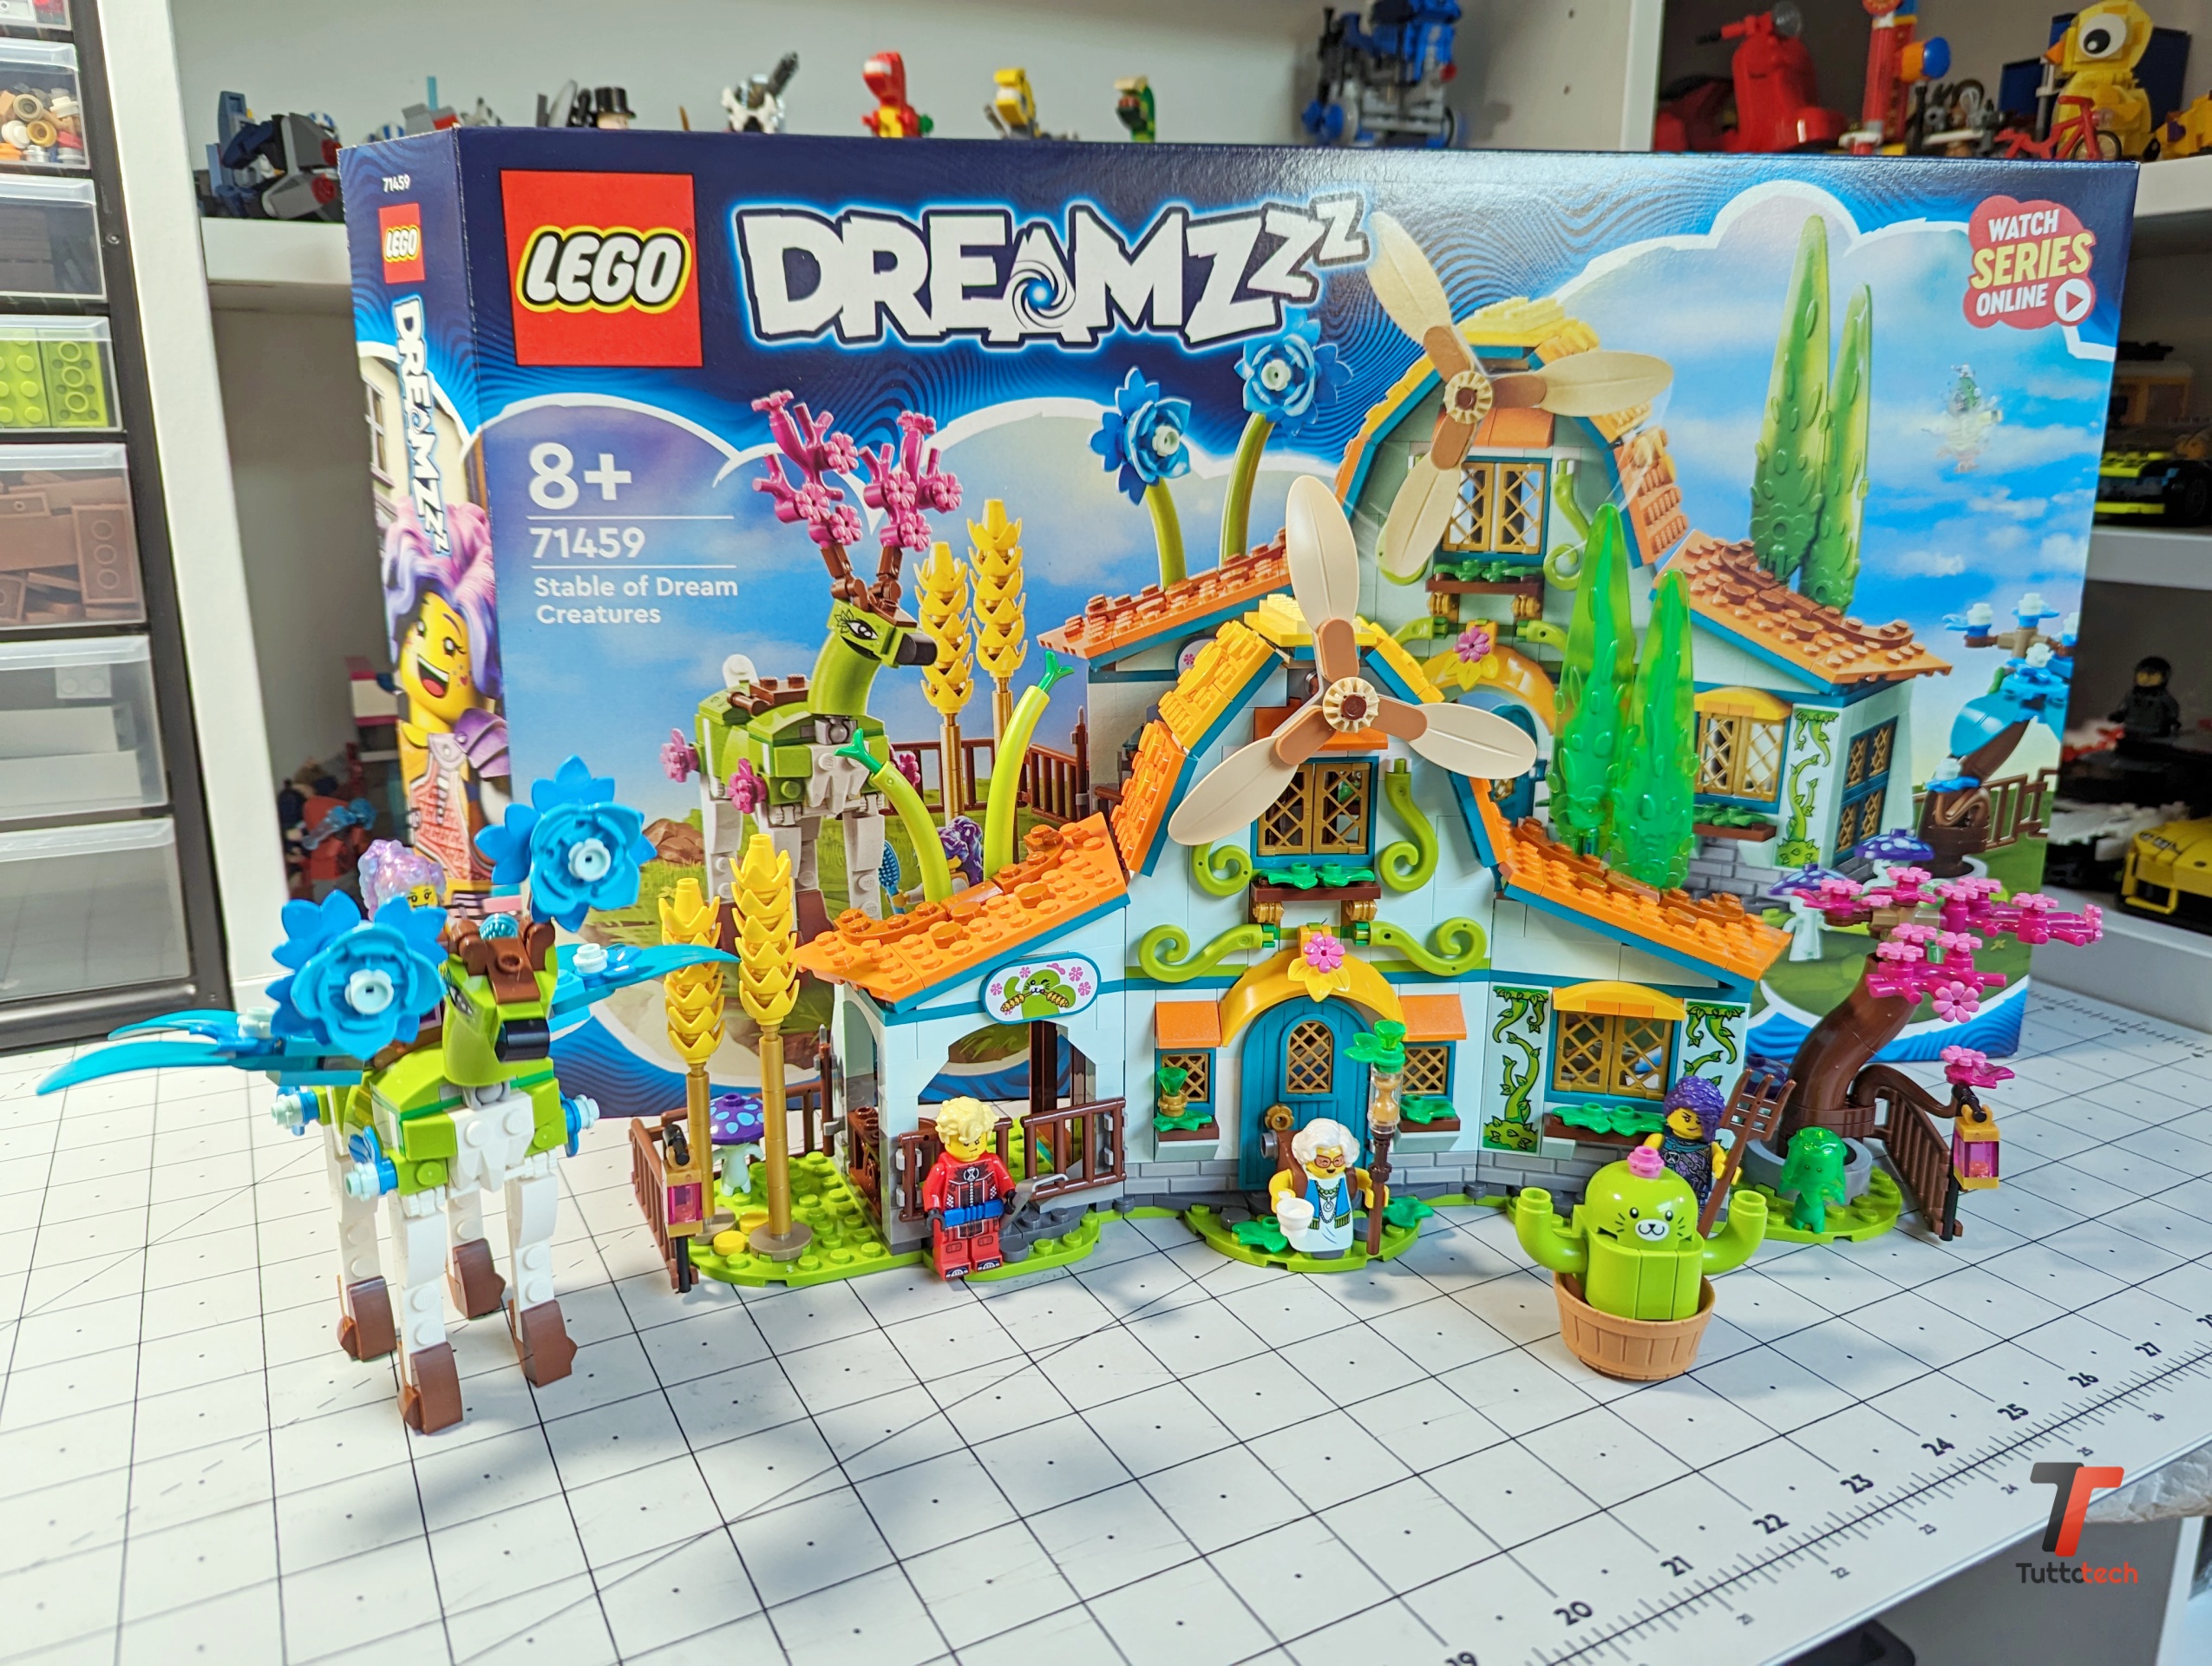 Recensione LEGO DREAMZzz: Scuderia delle Creature dei sogni, un